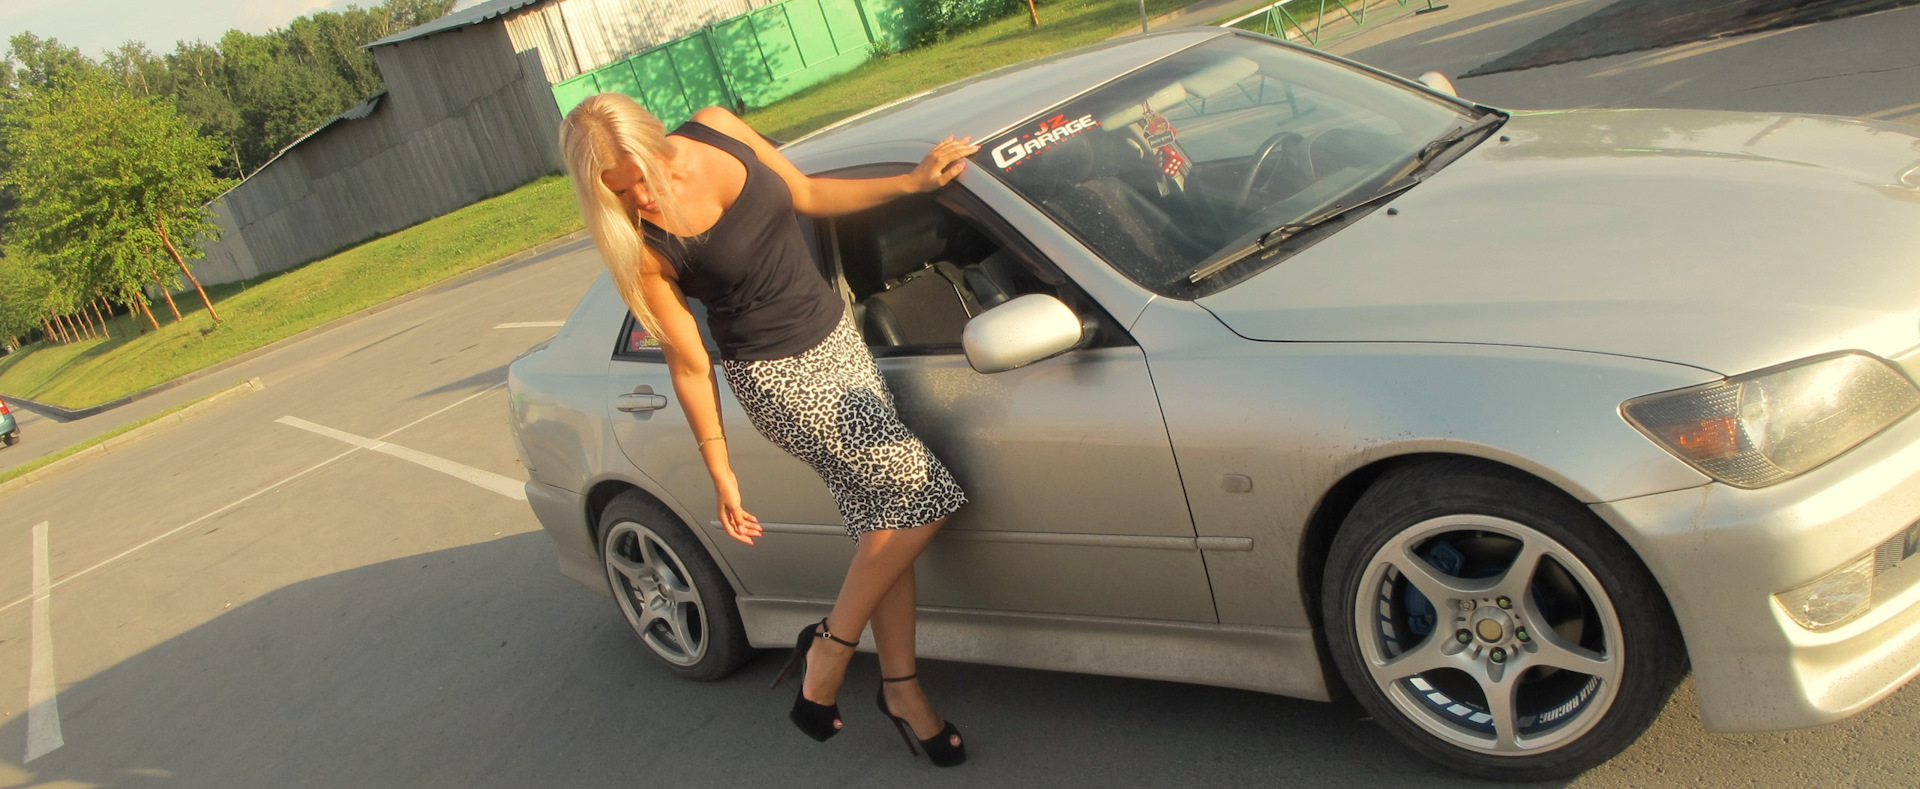 Машина для жены Лексус. Машина жены Щербакова. Жена в авто. Сторона жены фото машины.